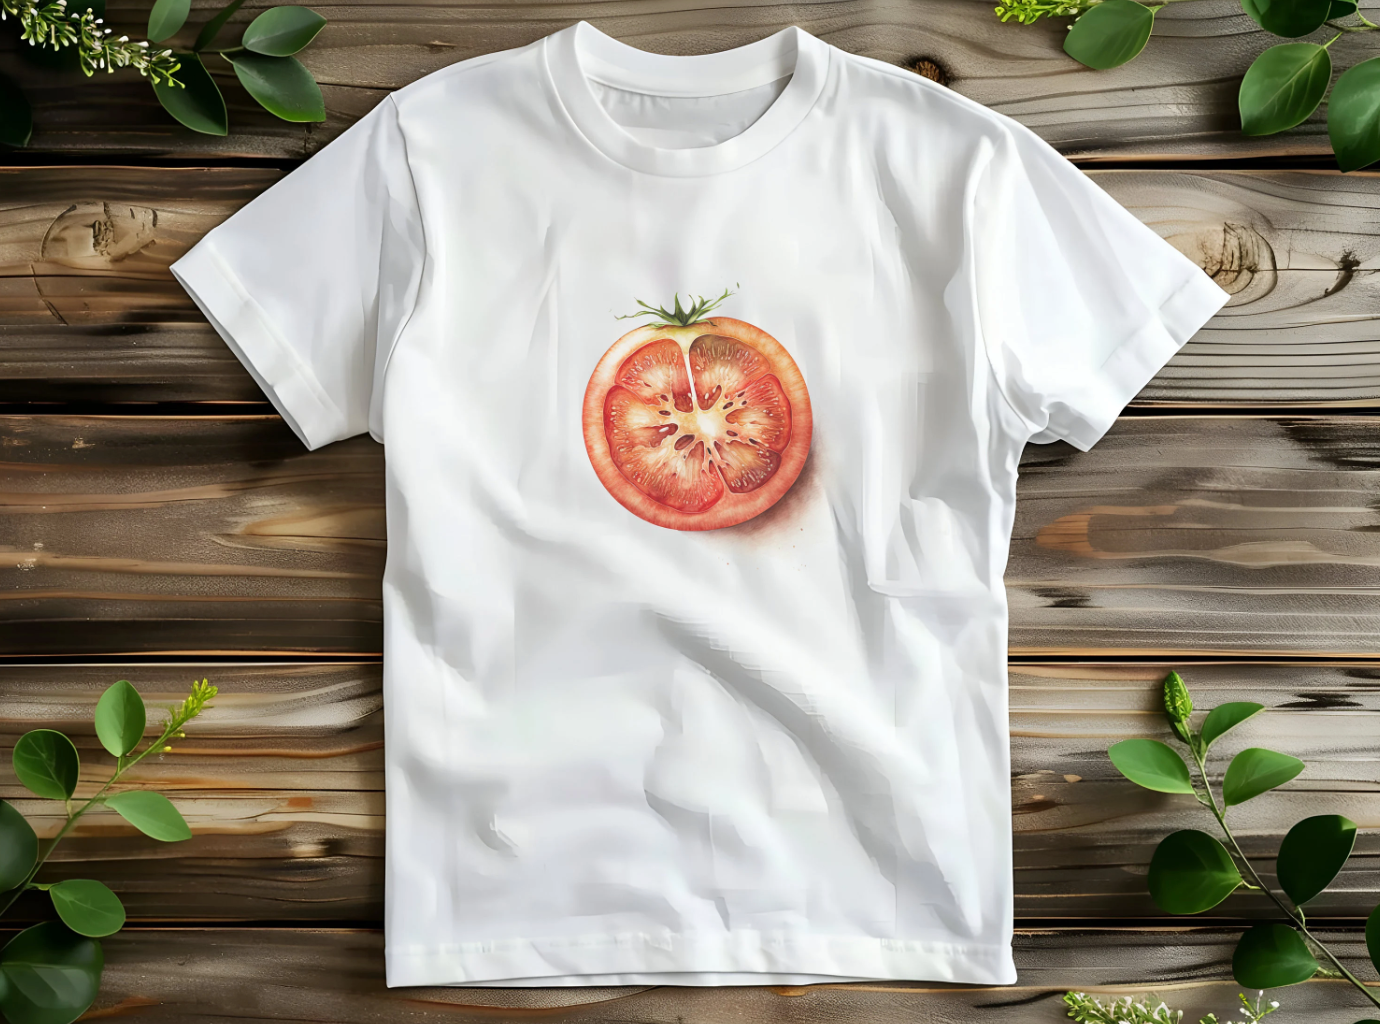 Women's Graphic Baby Tee Retro Tomato Shirt.